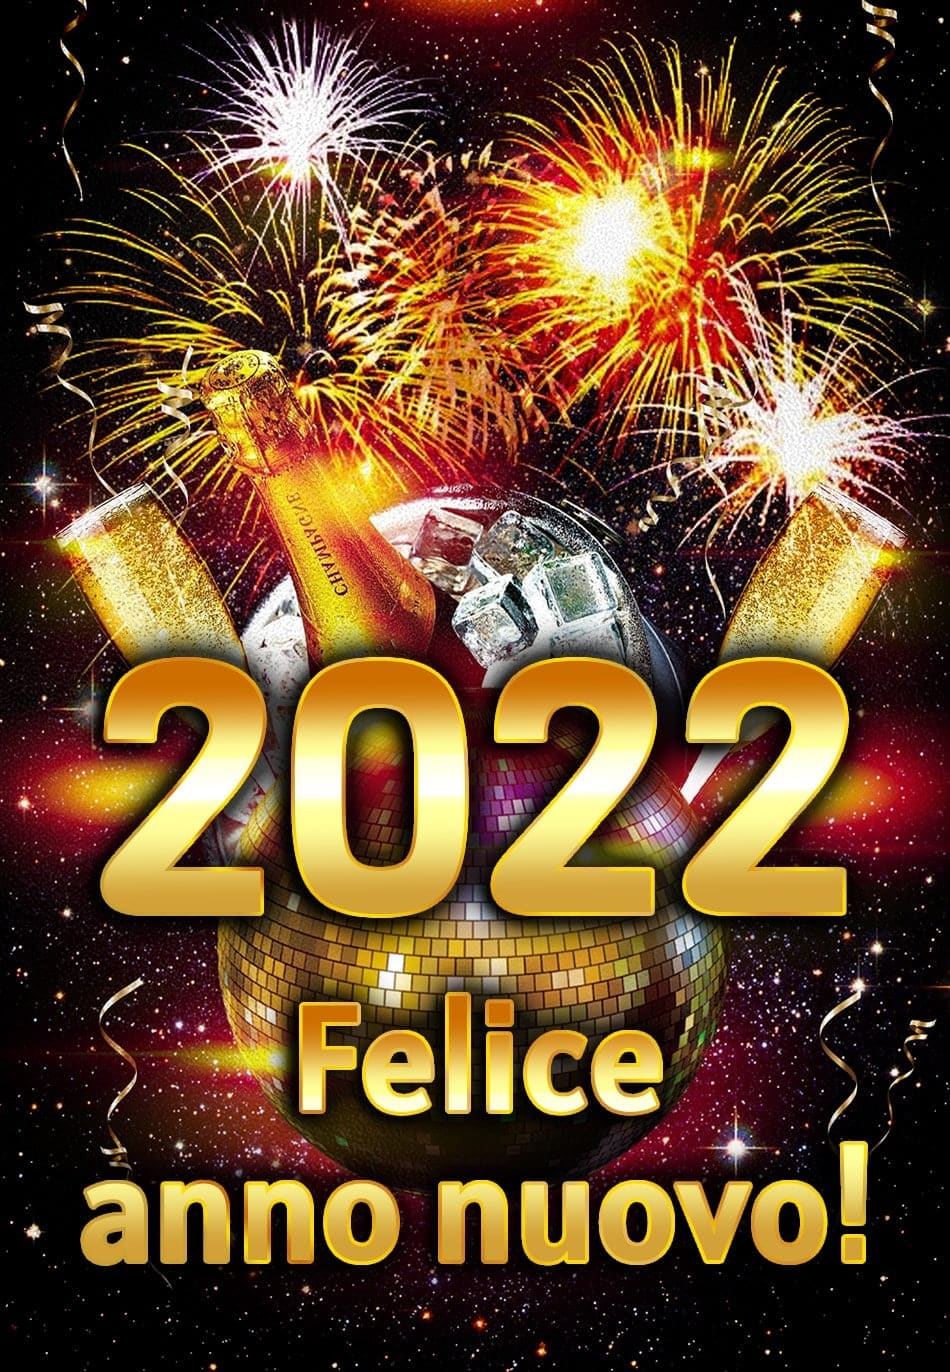 2022 Felice anno nuovo!